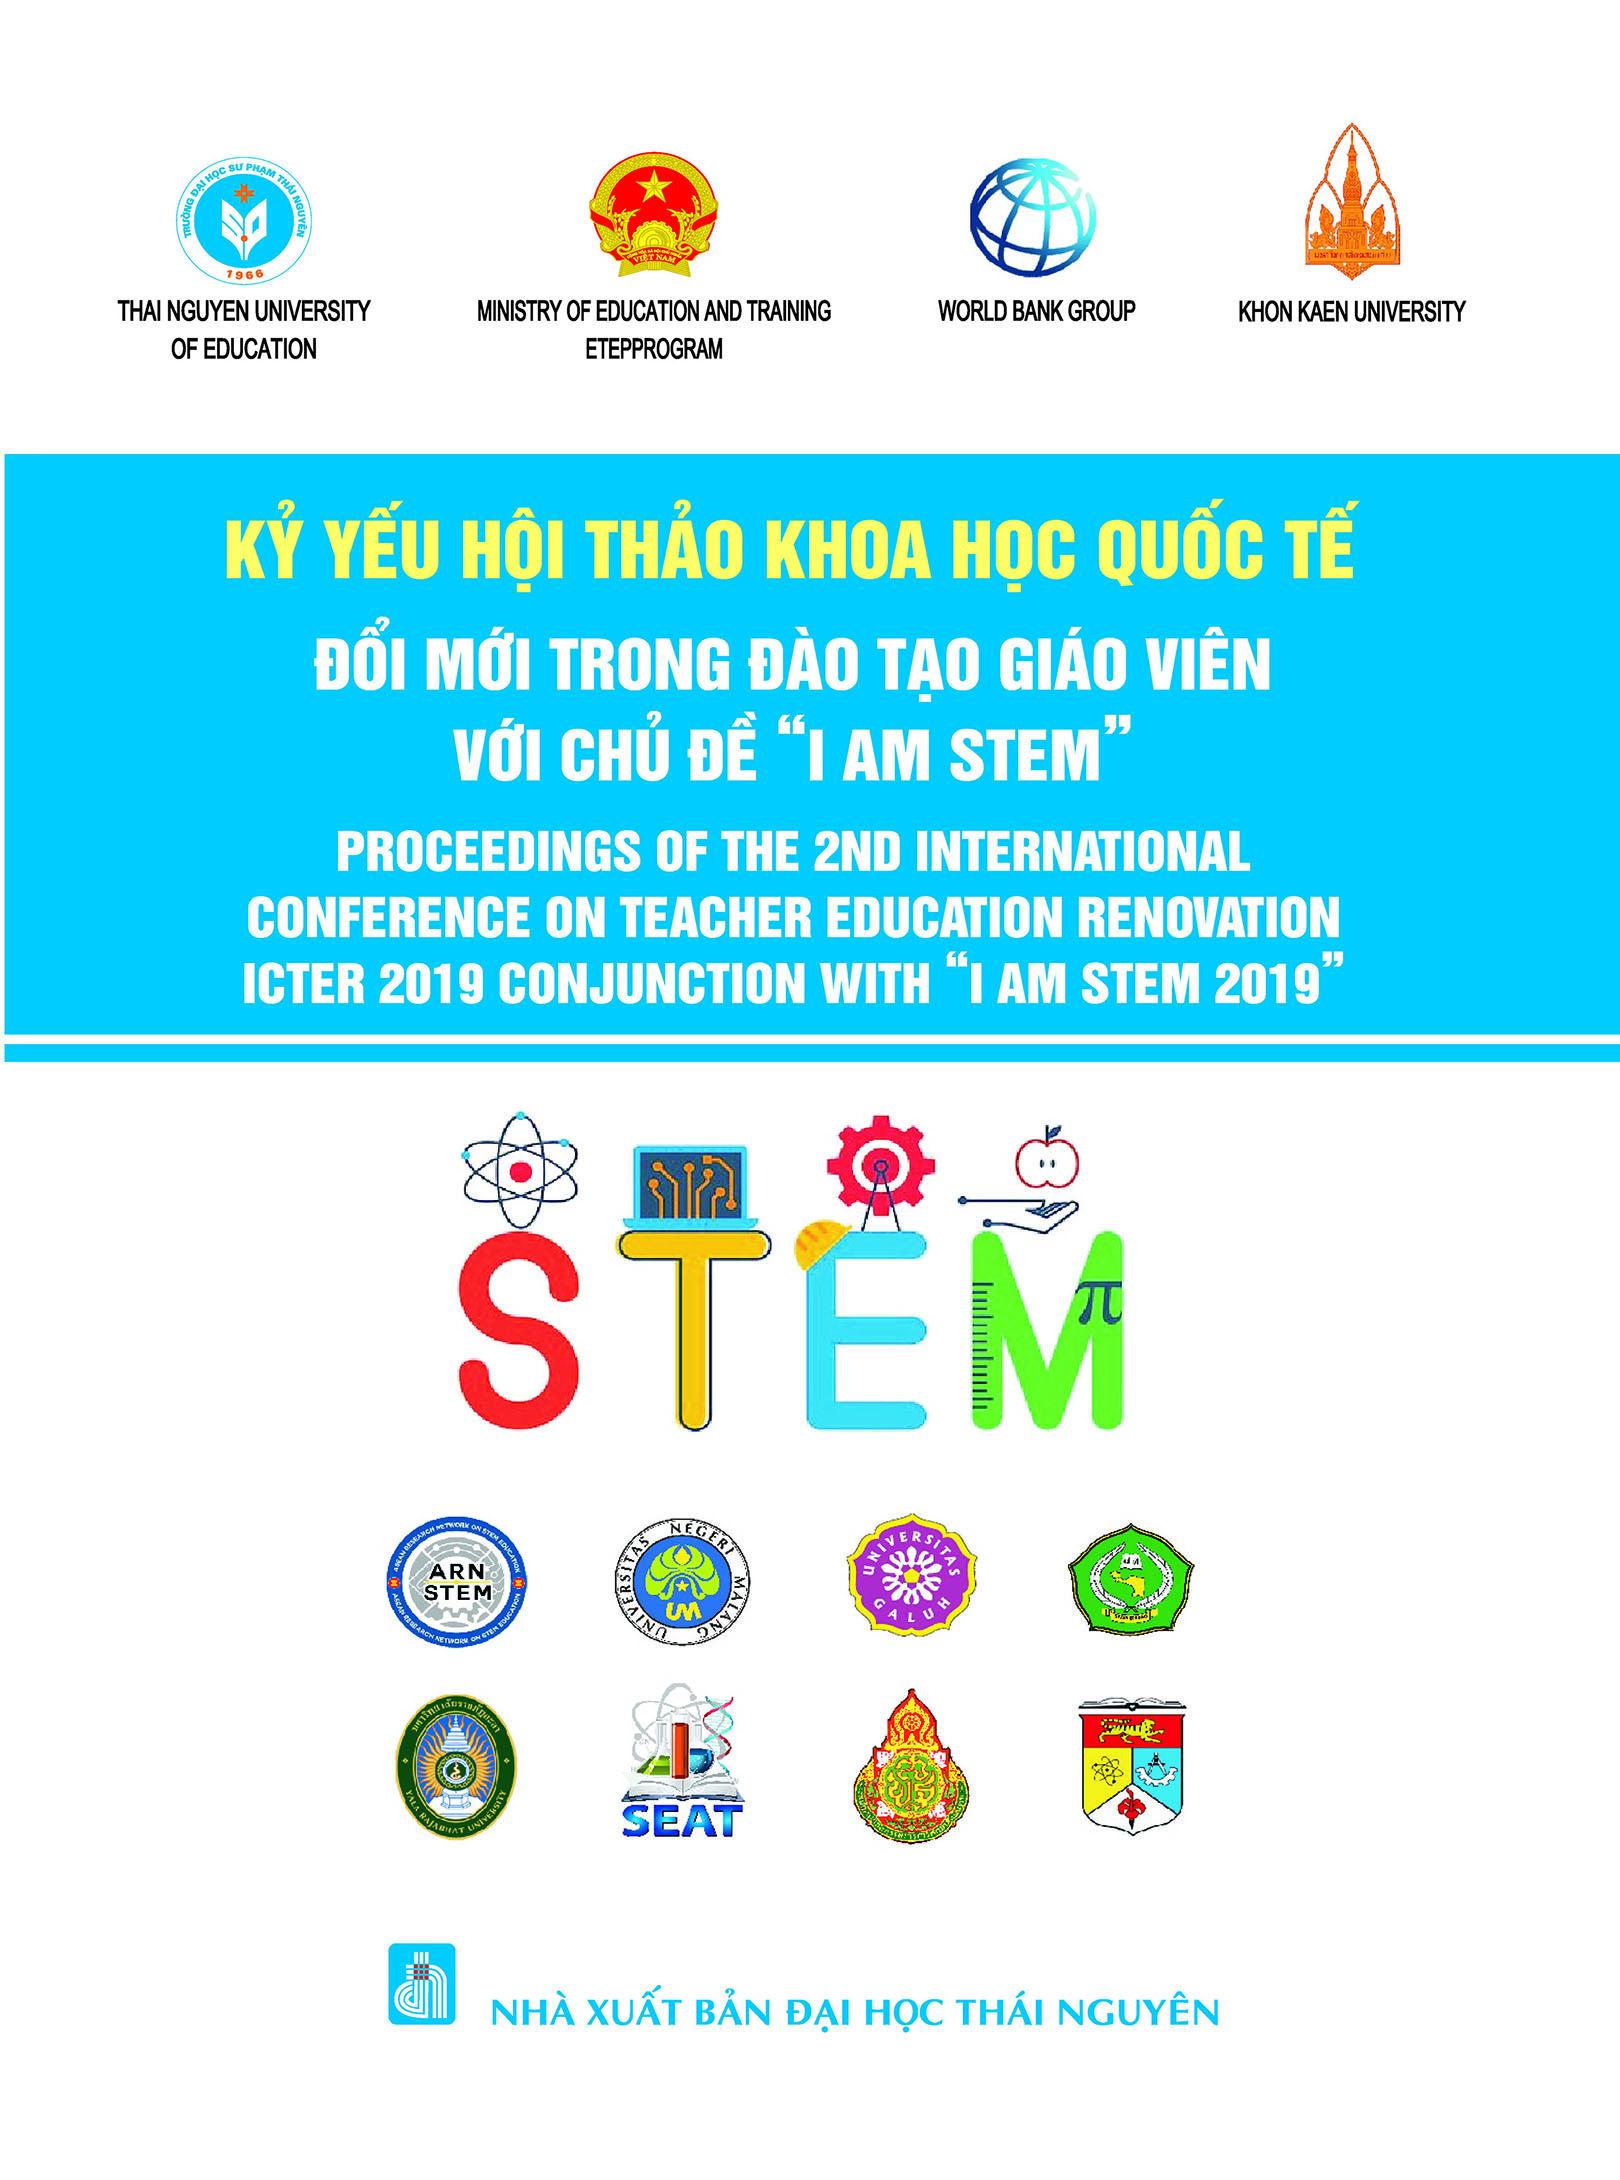 Kỷ yếu Hội thảo Khoa học quốc tế: Đổi mới trong đào tạo giáo viên với chủ đề “I am stem”